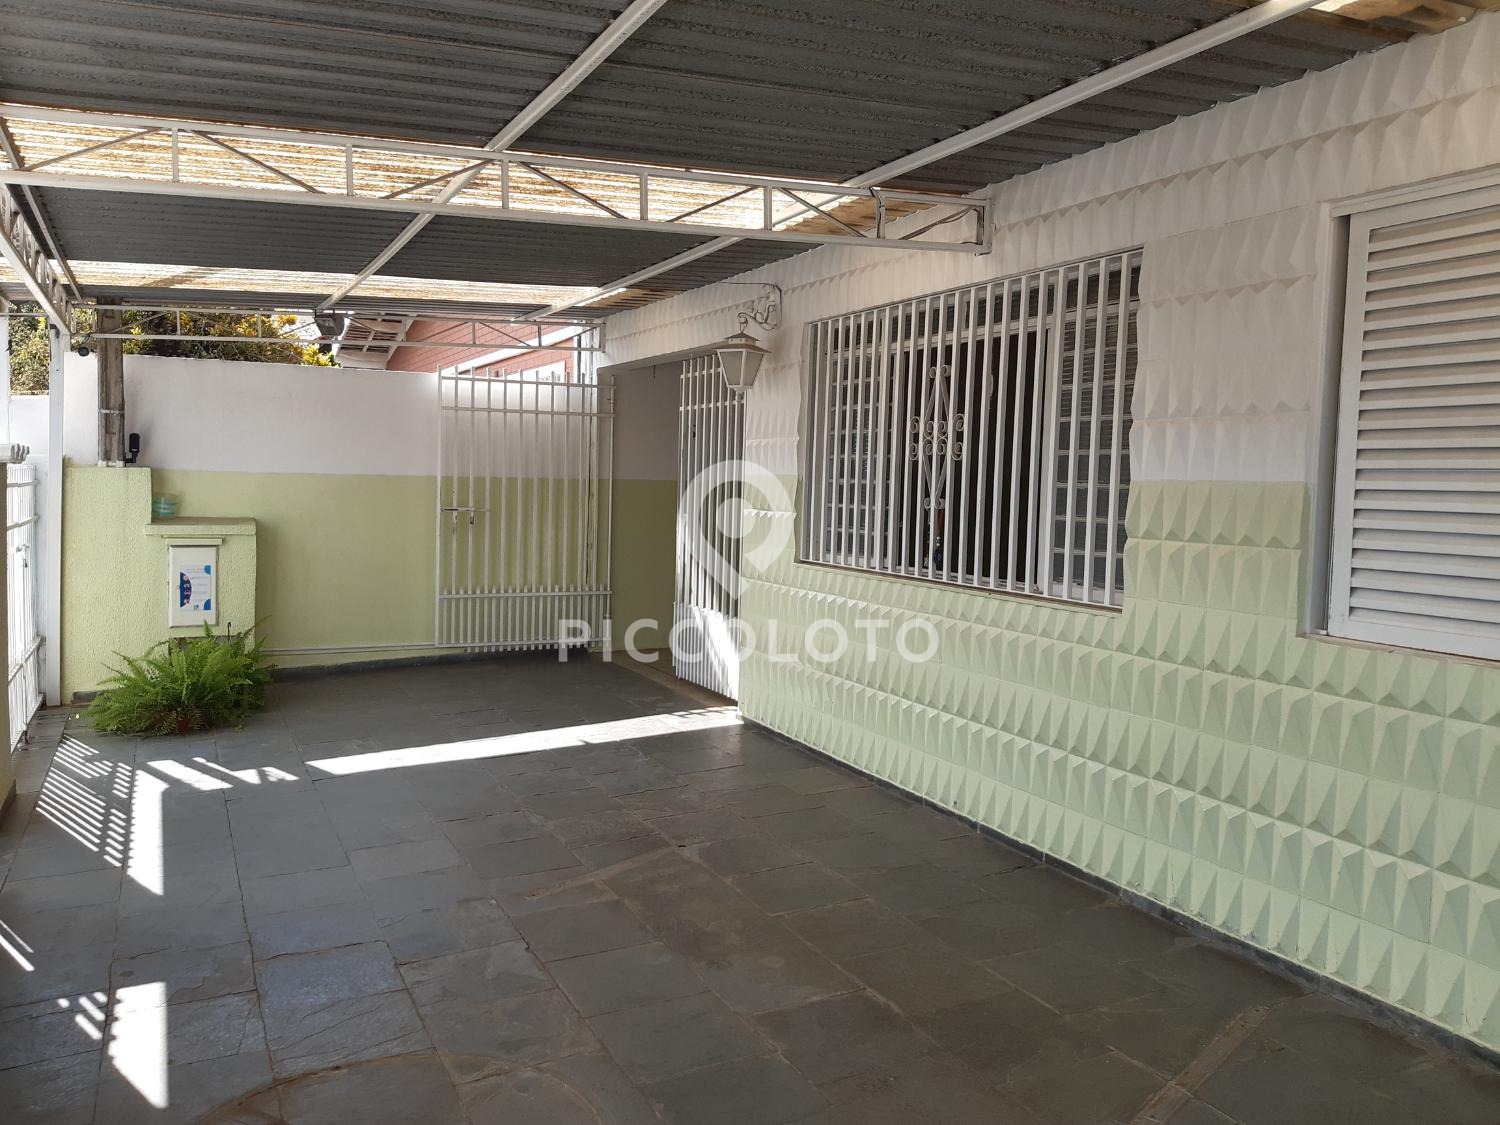 Piccoloto -Casa à venda no Jardim Carlos Lourenço em Campinas